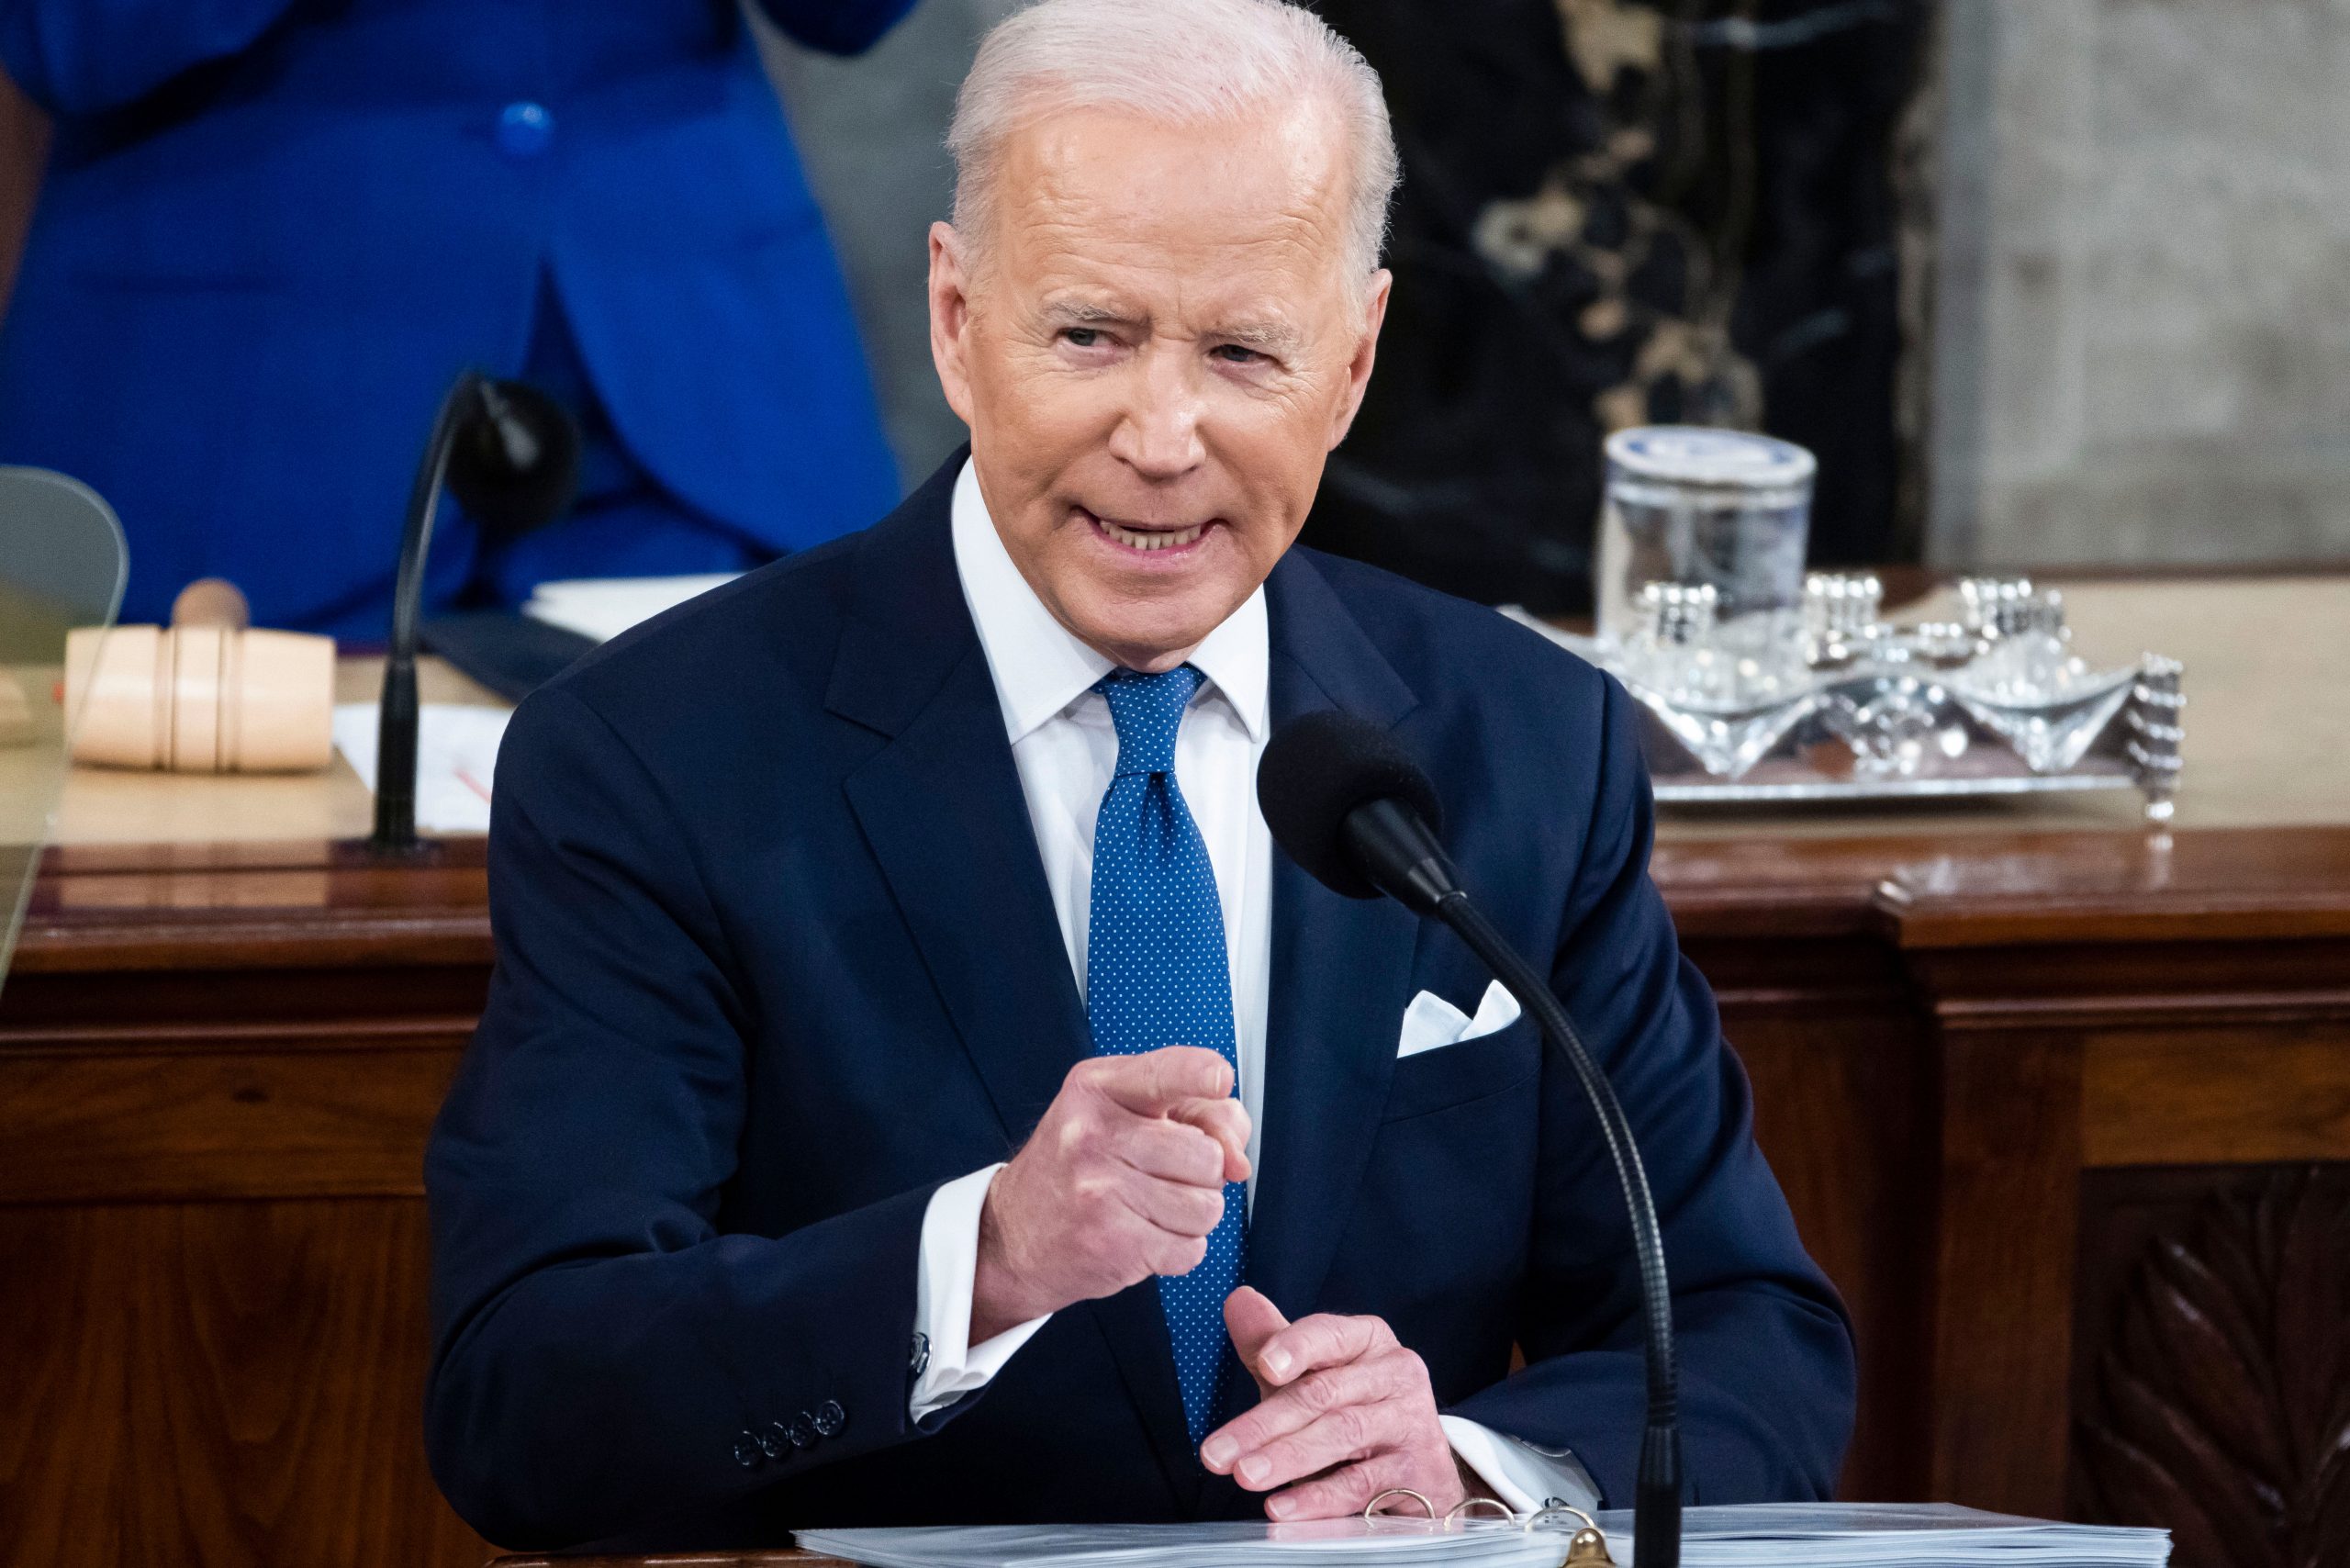 Joe Biden’s first State of the Union: Key takeaways